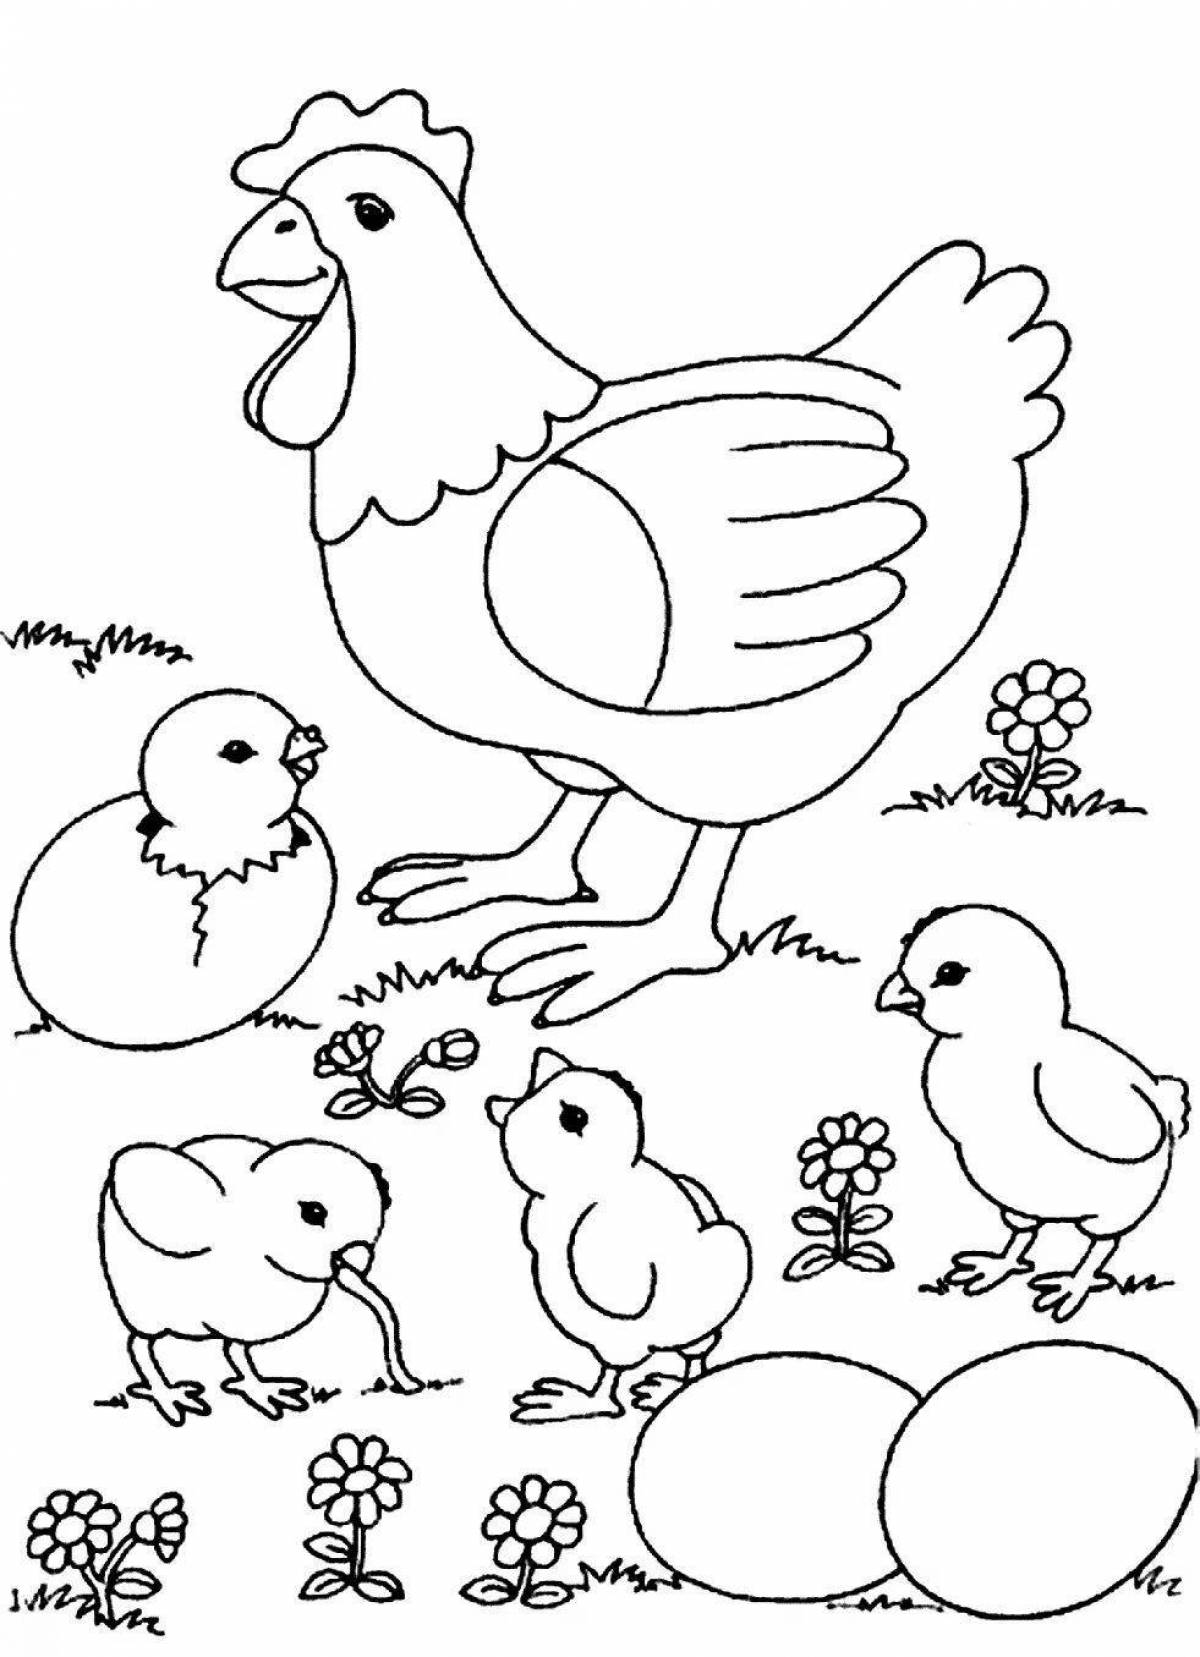 Веселая страница раскраски птицы для детей 6-7 лет